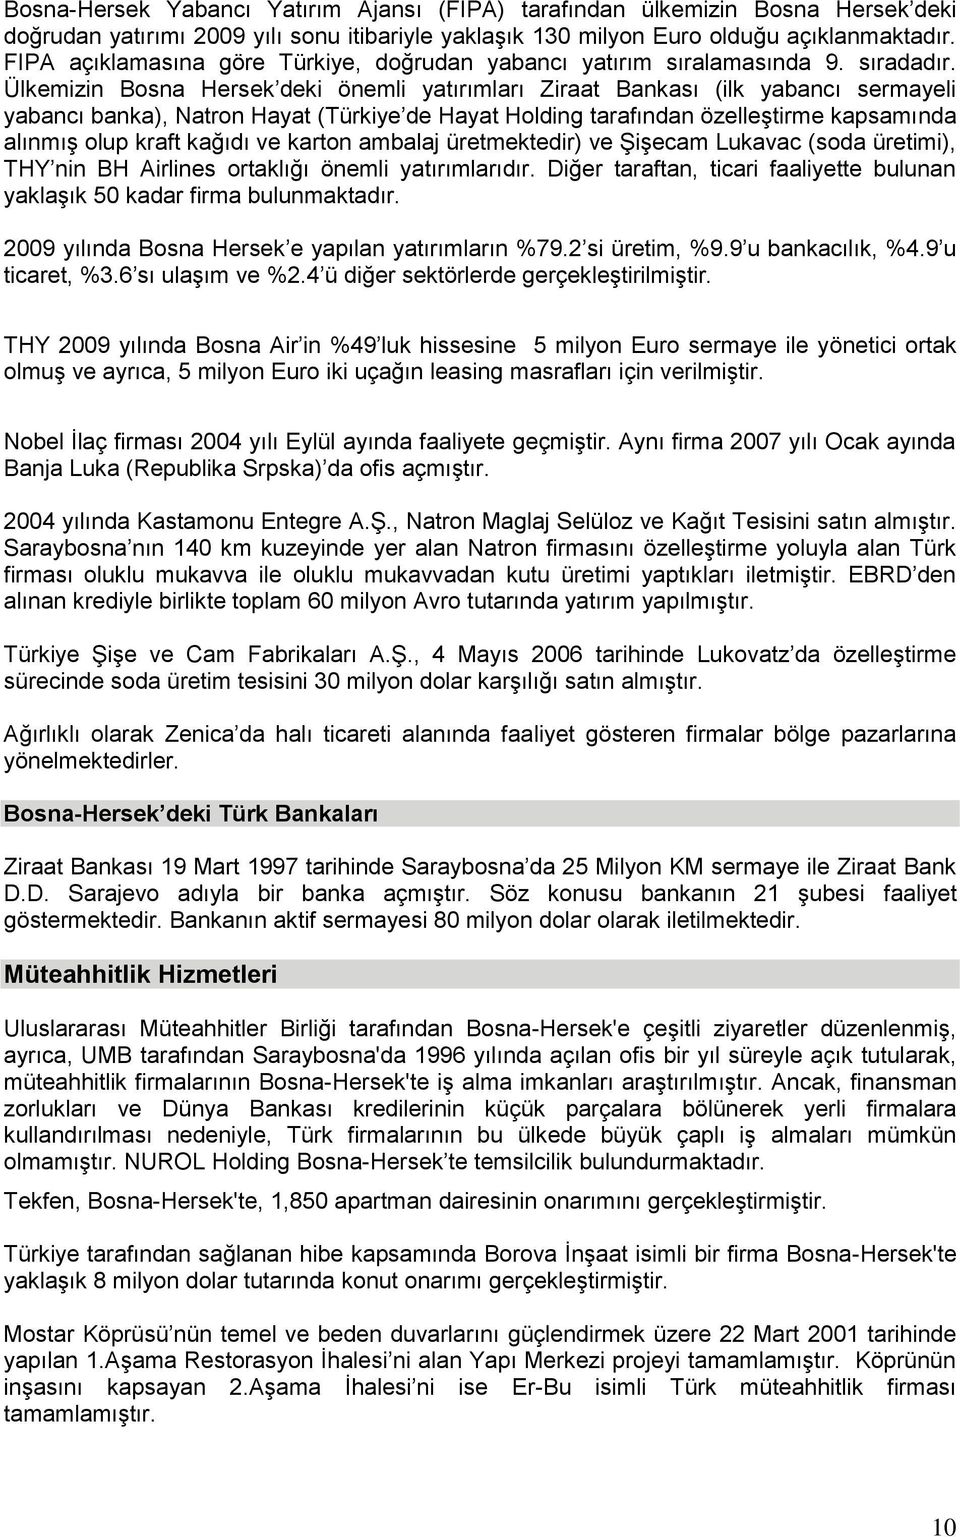 Ülkemizin Bosna Hersek deki önemli yatırımları Ziraat Bankası (ilk yabancı sermayeli yabancı banka), Natron Hayat (Türkiye de Hayat Holding tarafından özelleģtirme kapsamında alınmıģ olup kraft